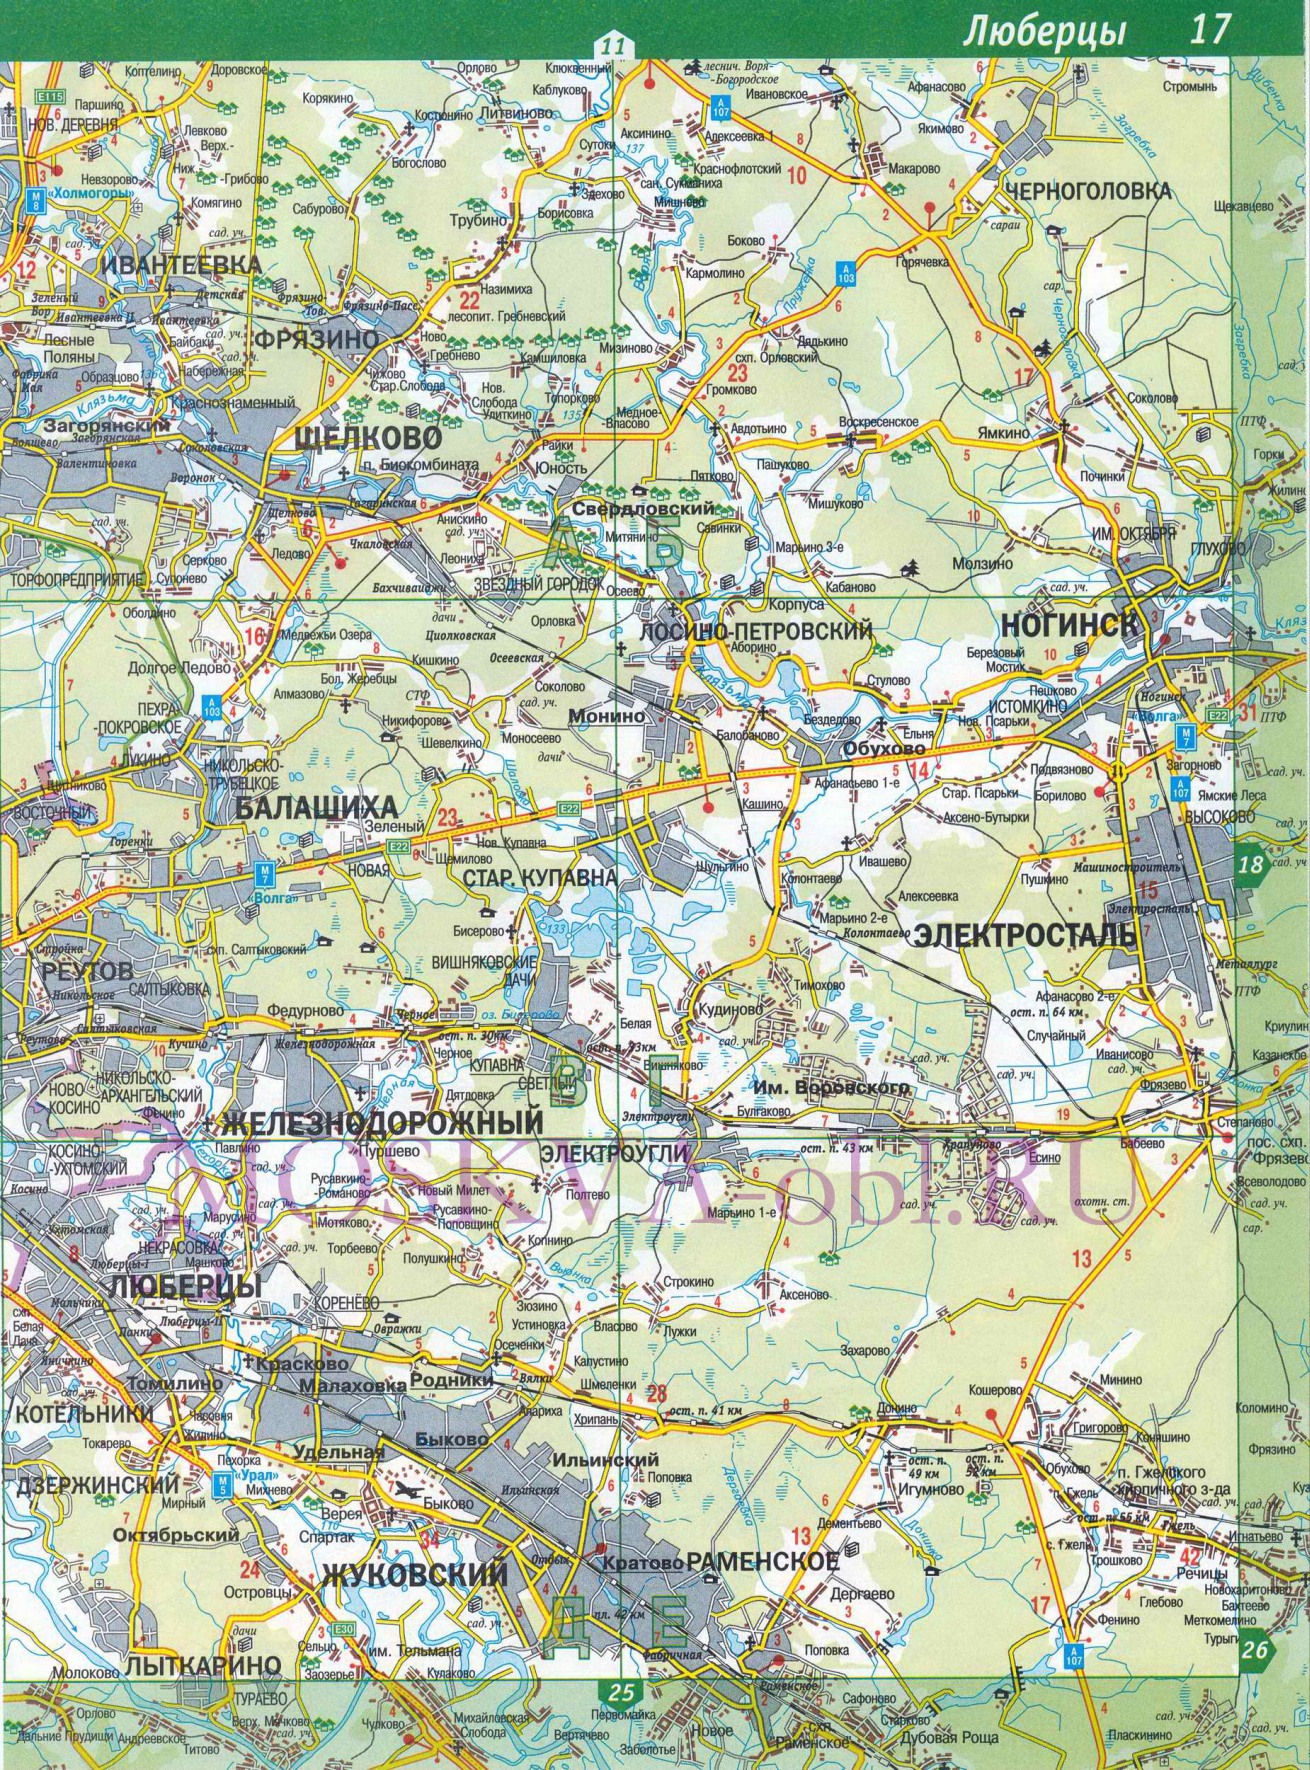 Балашихинский район Московской области - карта автодорог масштаба 1см:2км